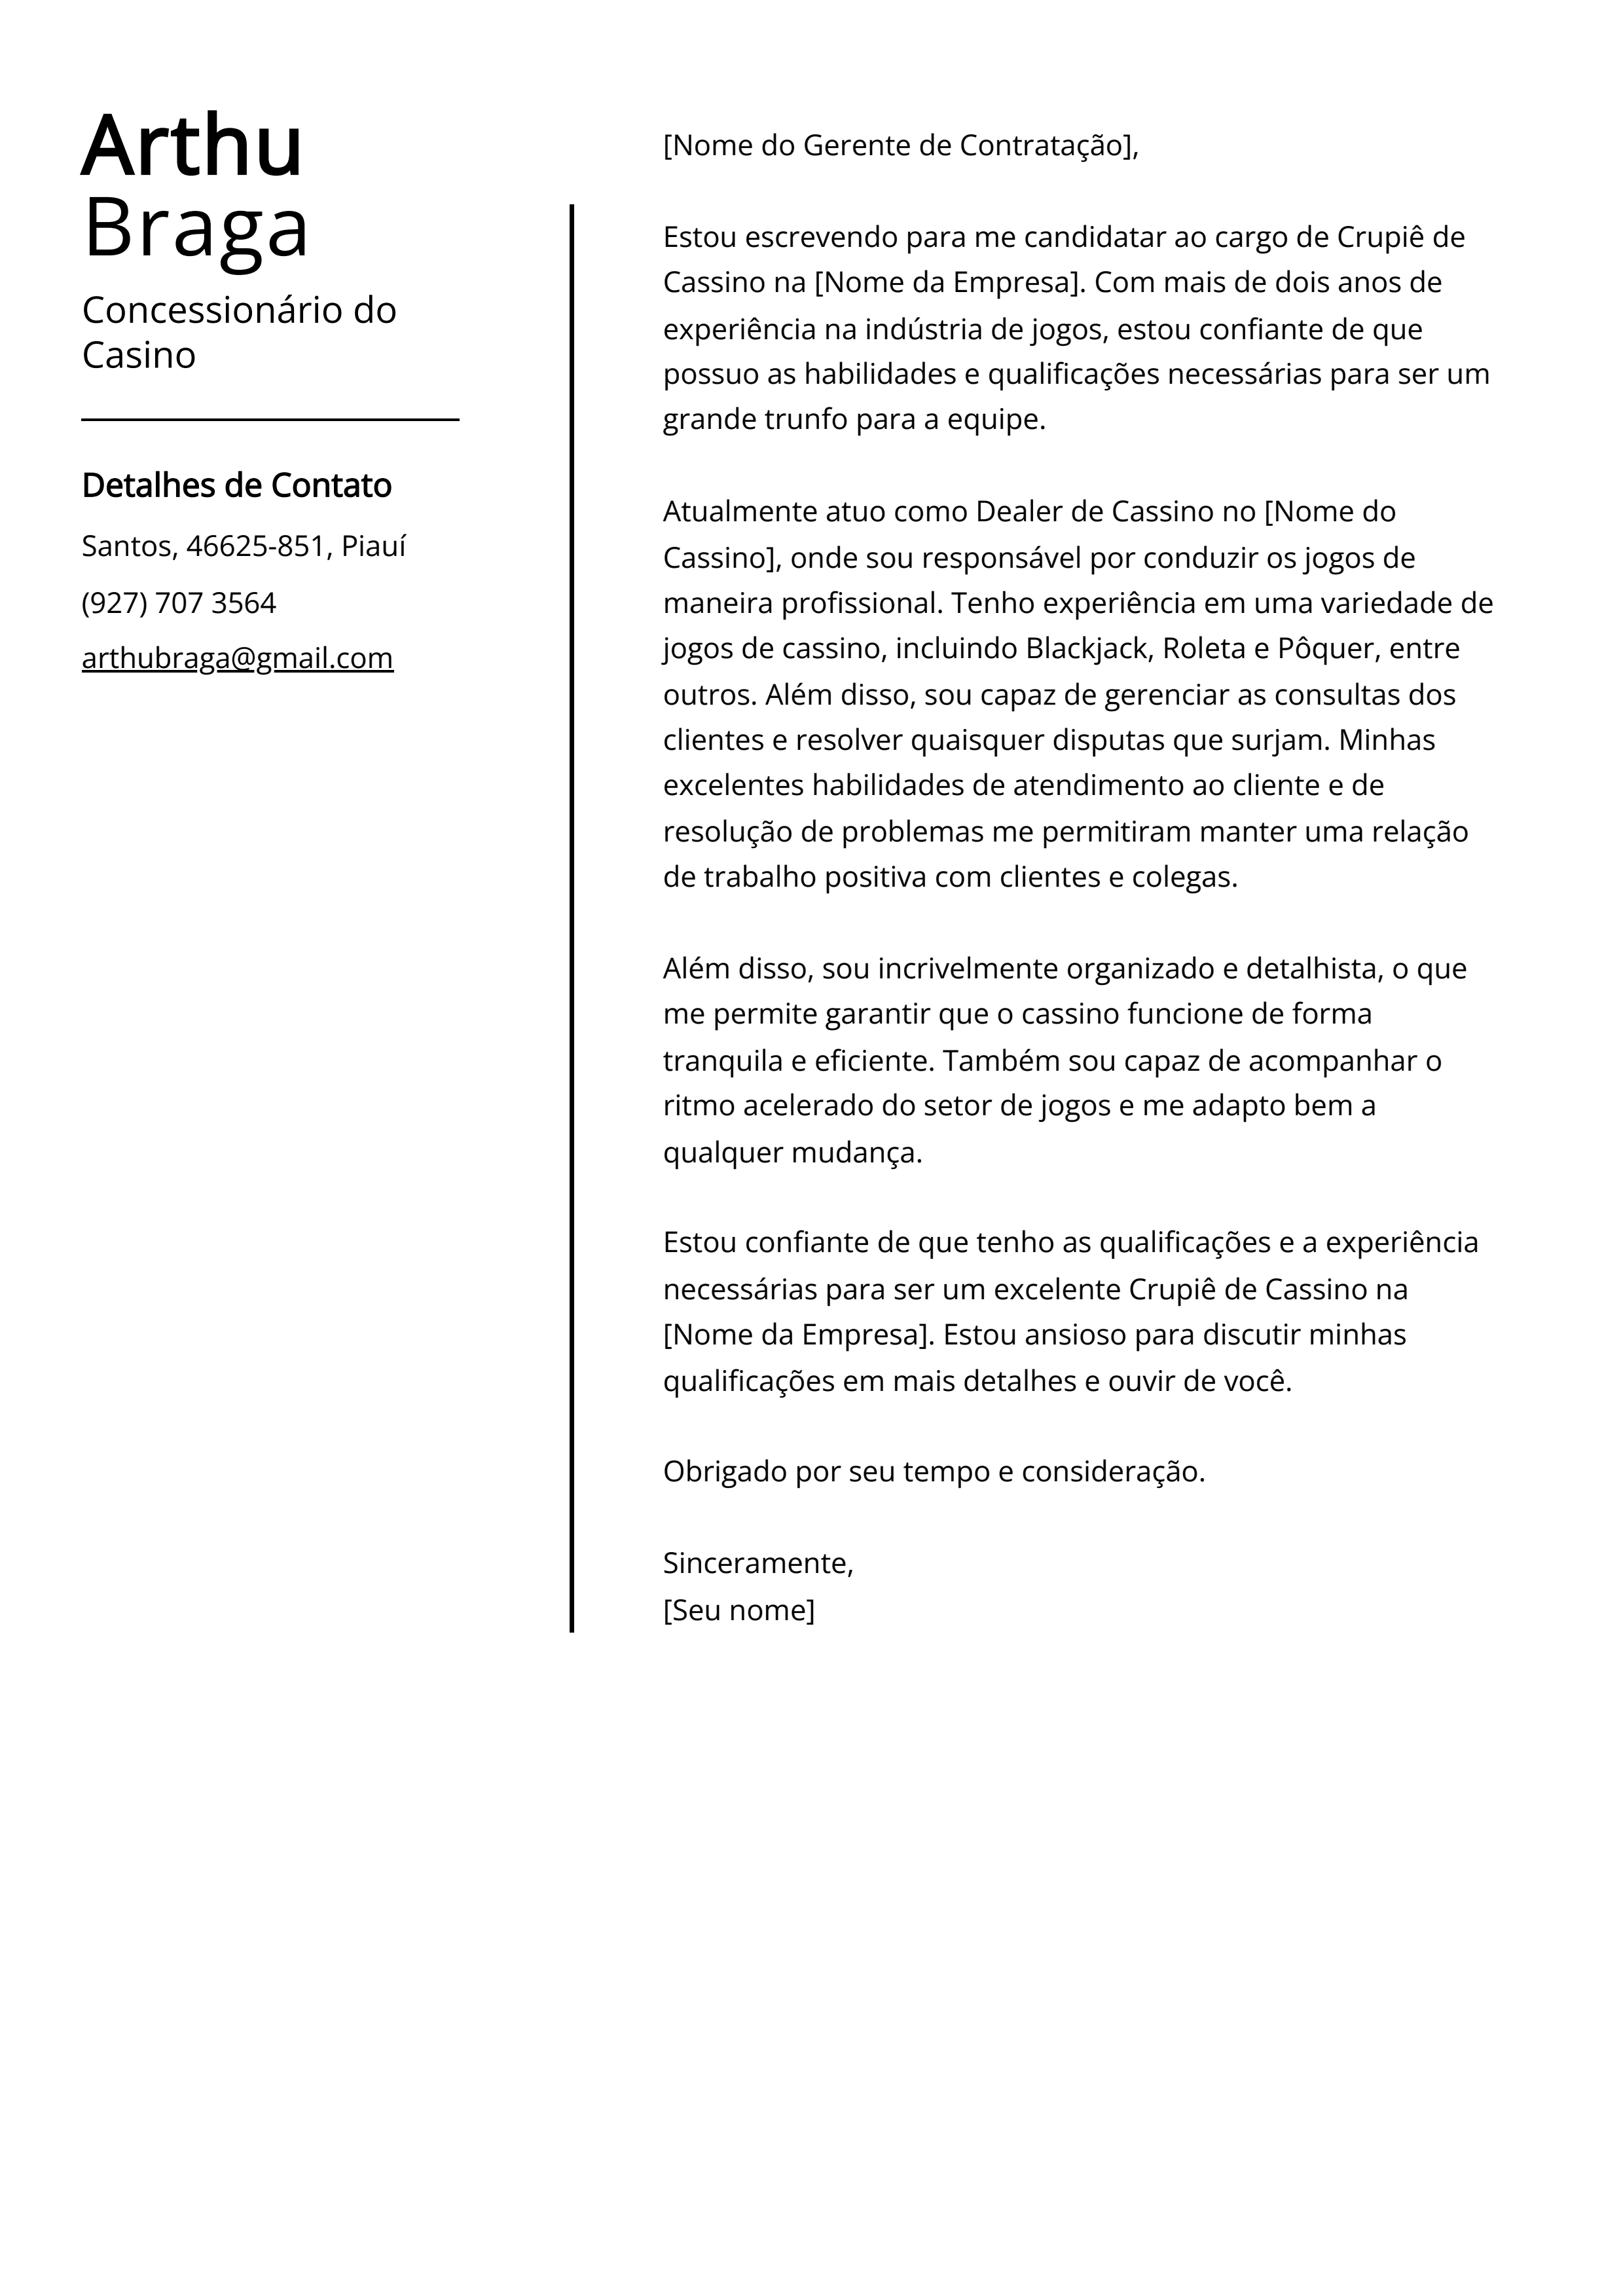 Exemplo de carta de apresentação do Concessionário do Cassino